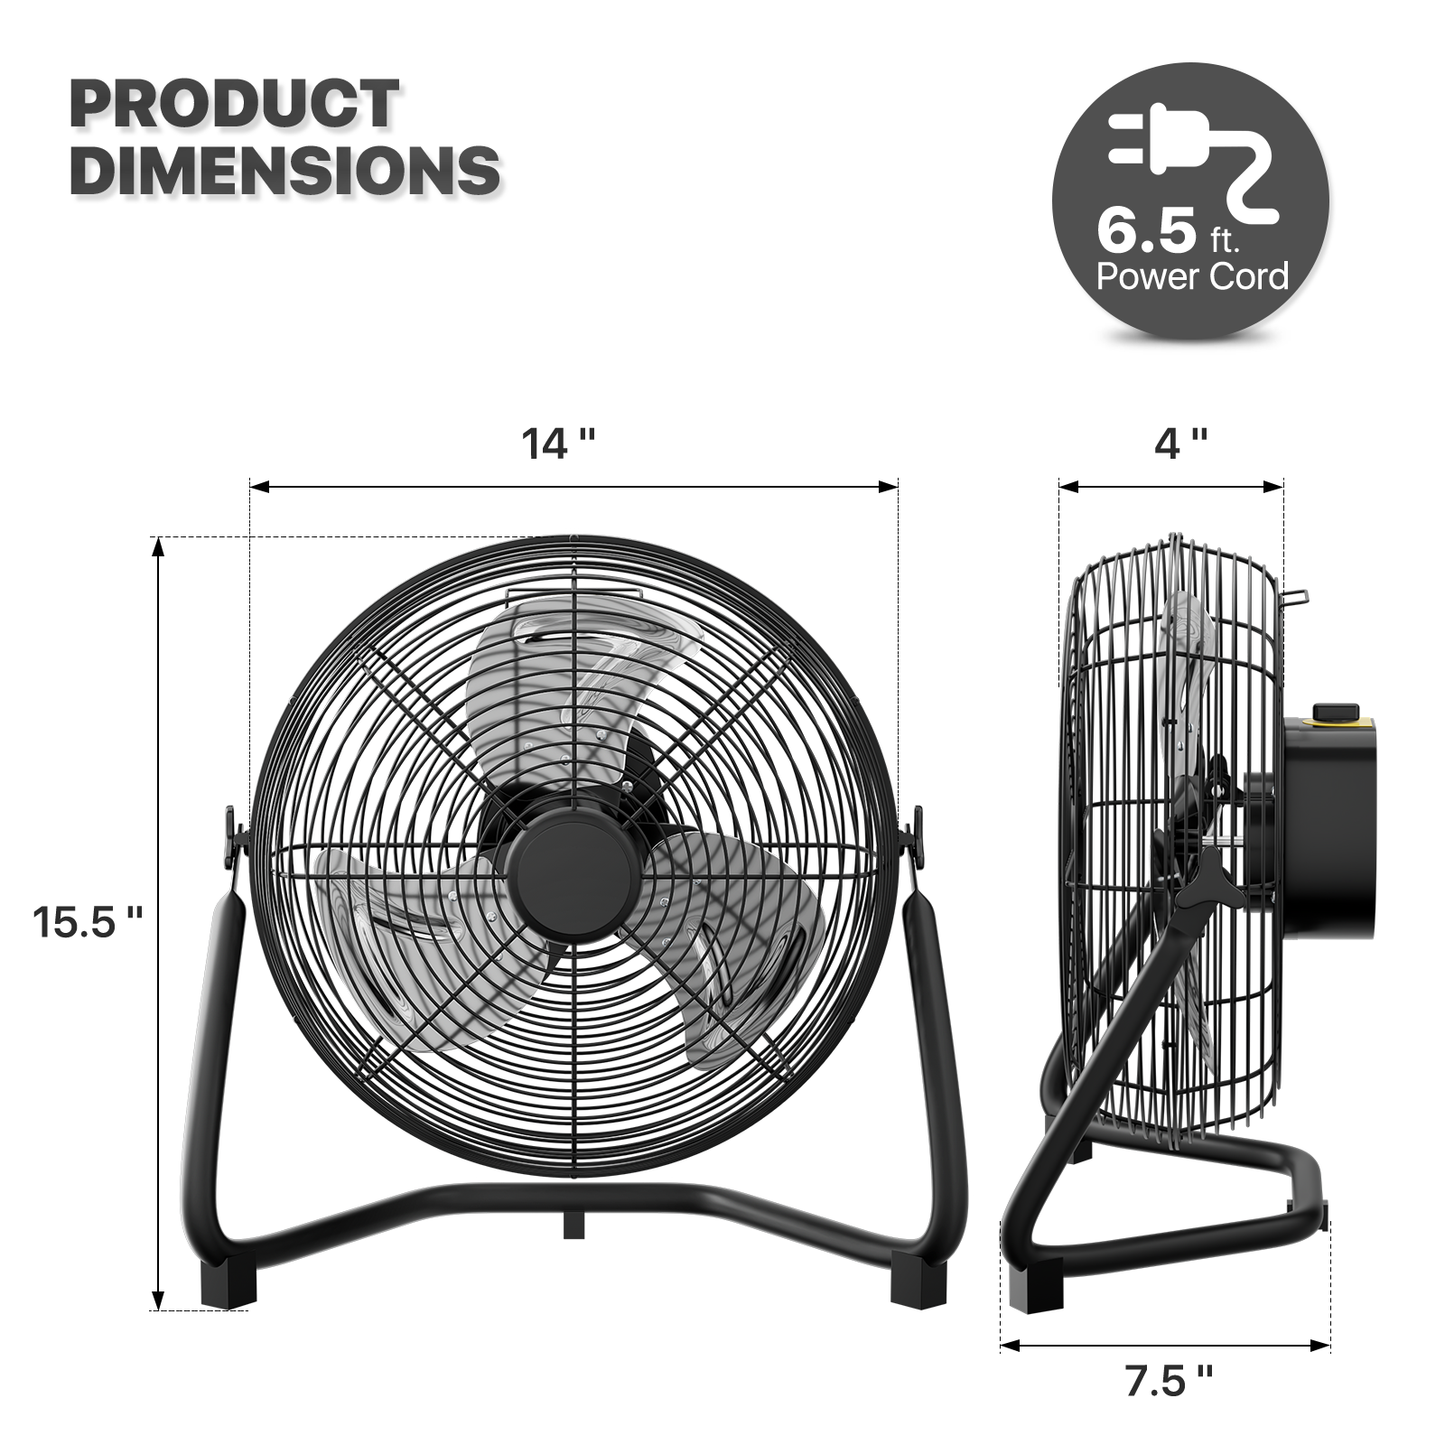 14" Floor Fan - 3 Speeds - Adjustable Tilt